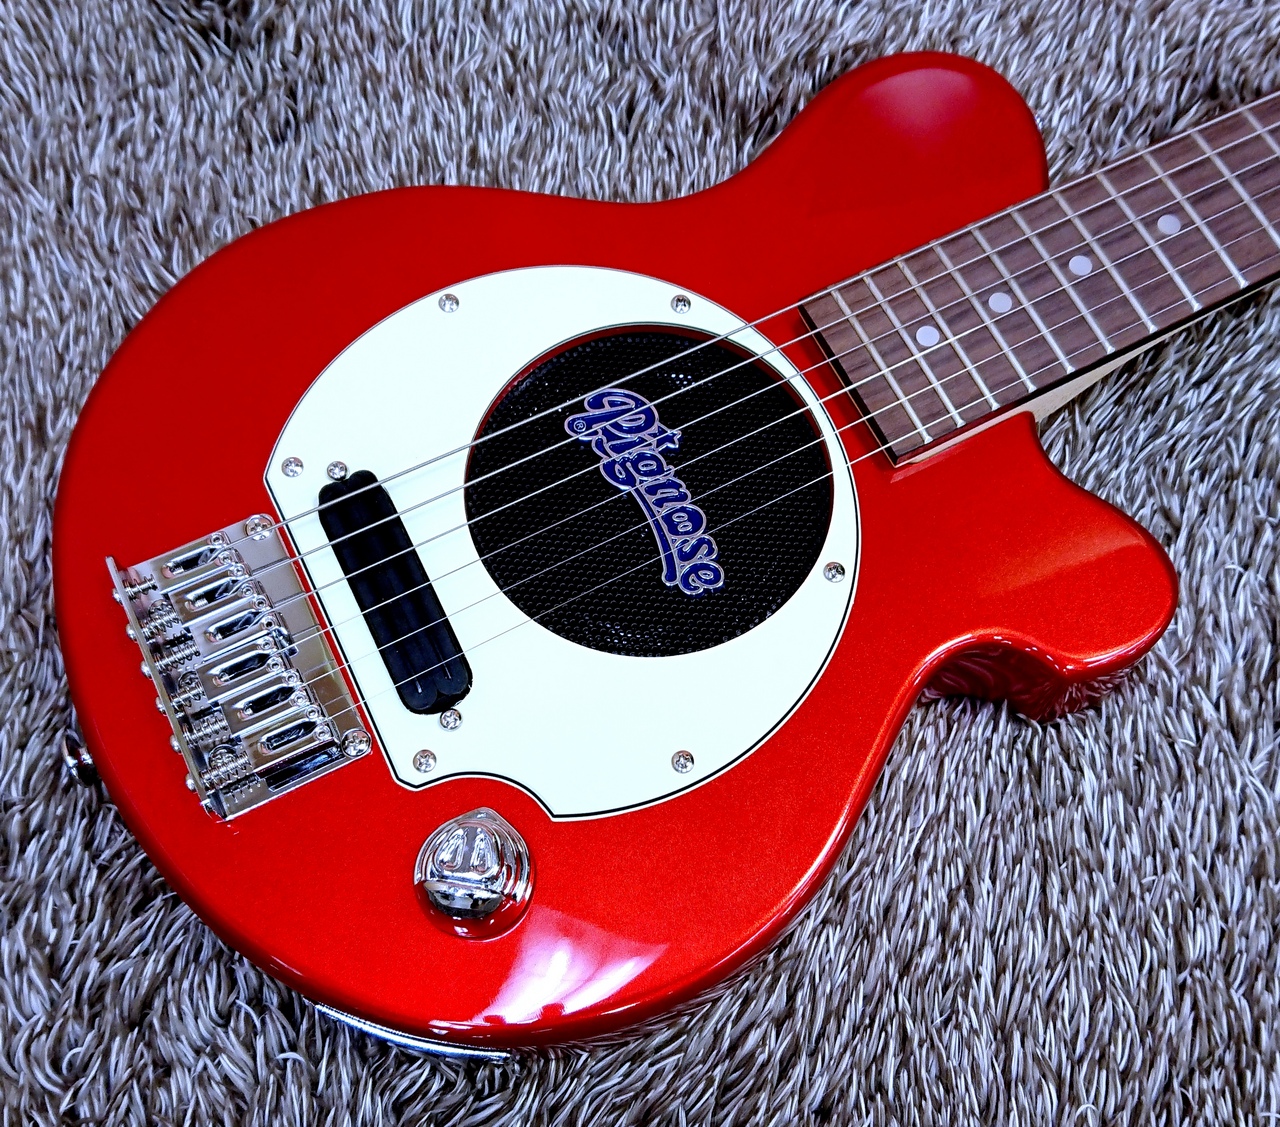 Pignose ピグノーズギター PGG-259 - エレキギター